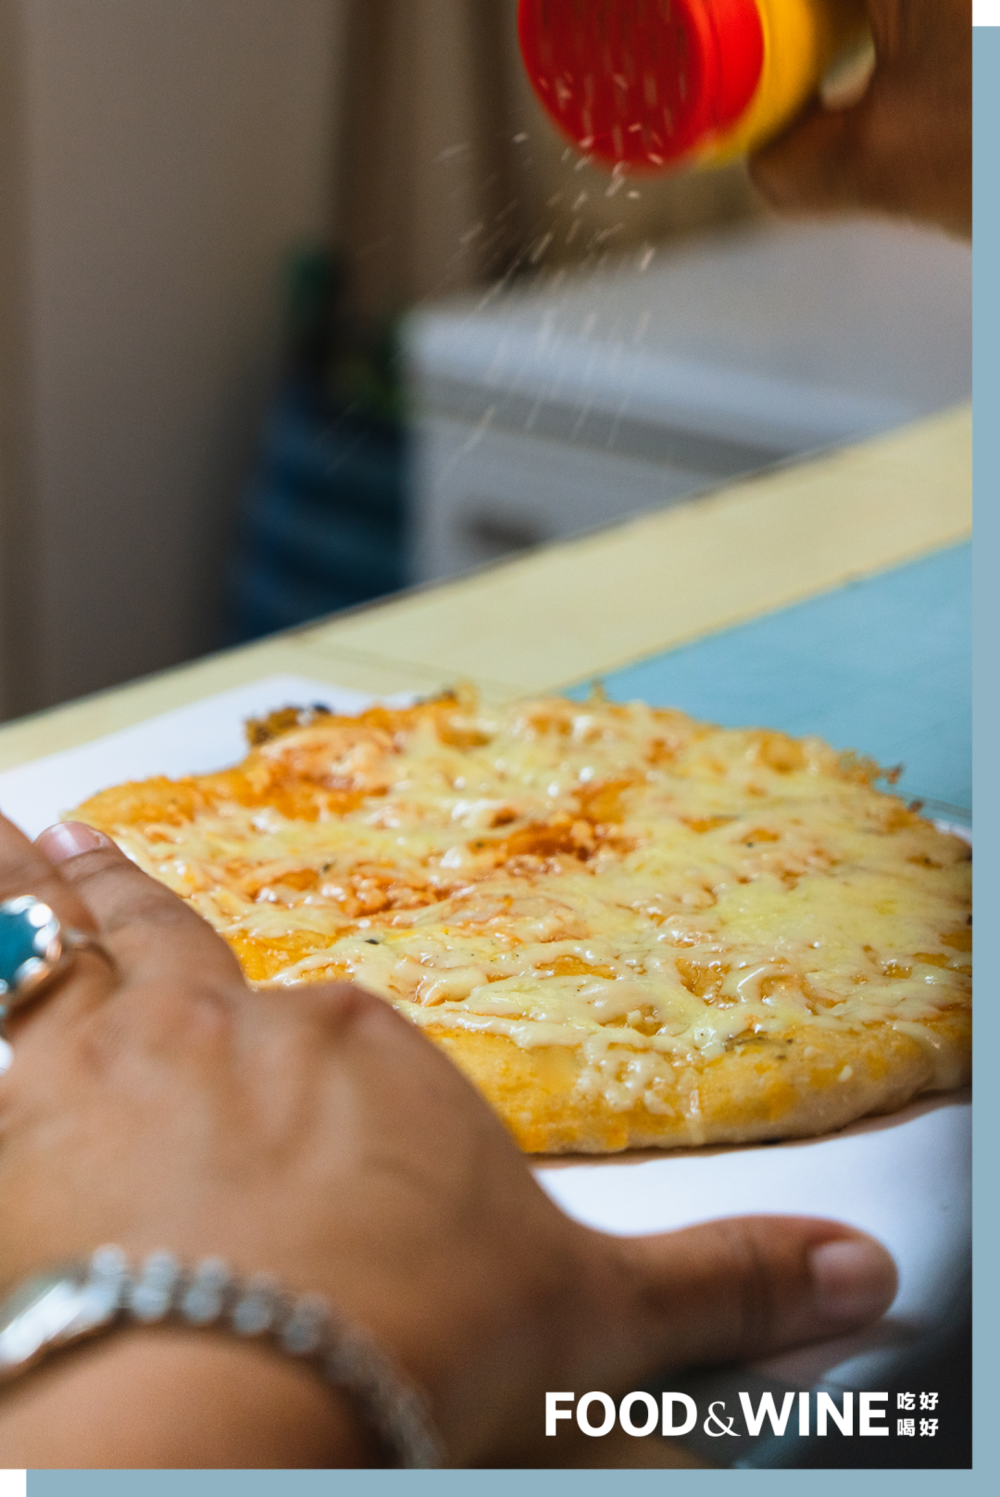 古巴街头随处可见的简易比萨，面饼上大多是芝士，偶有几根火腿丝。<br>